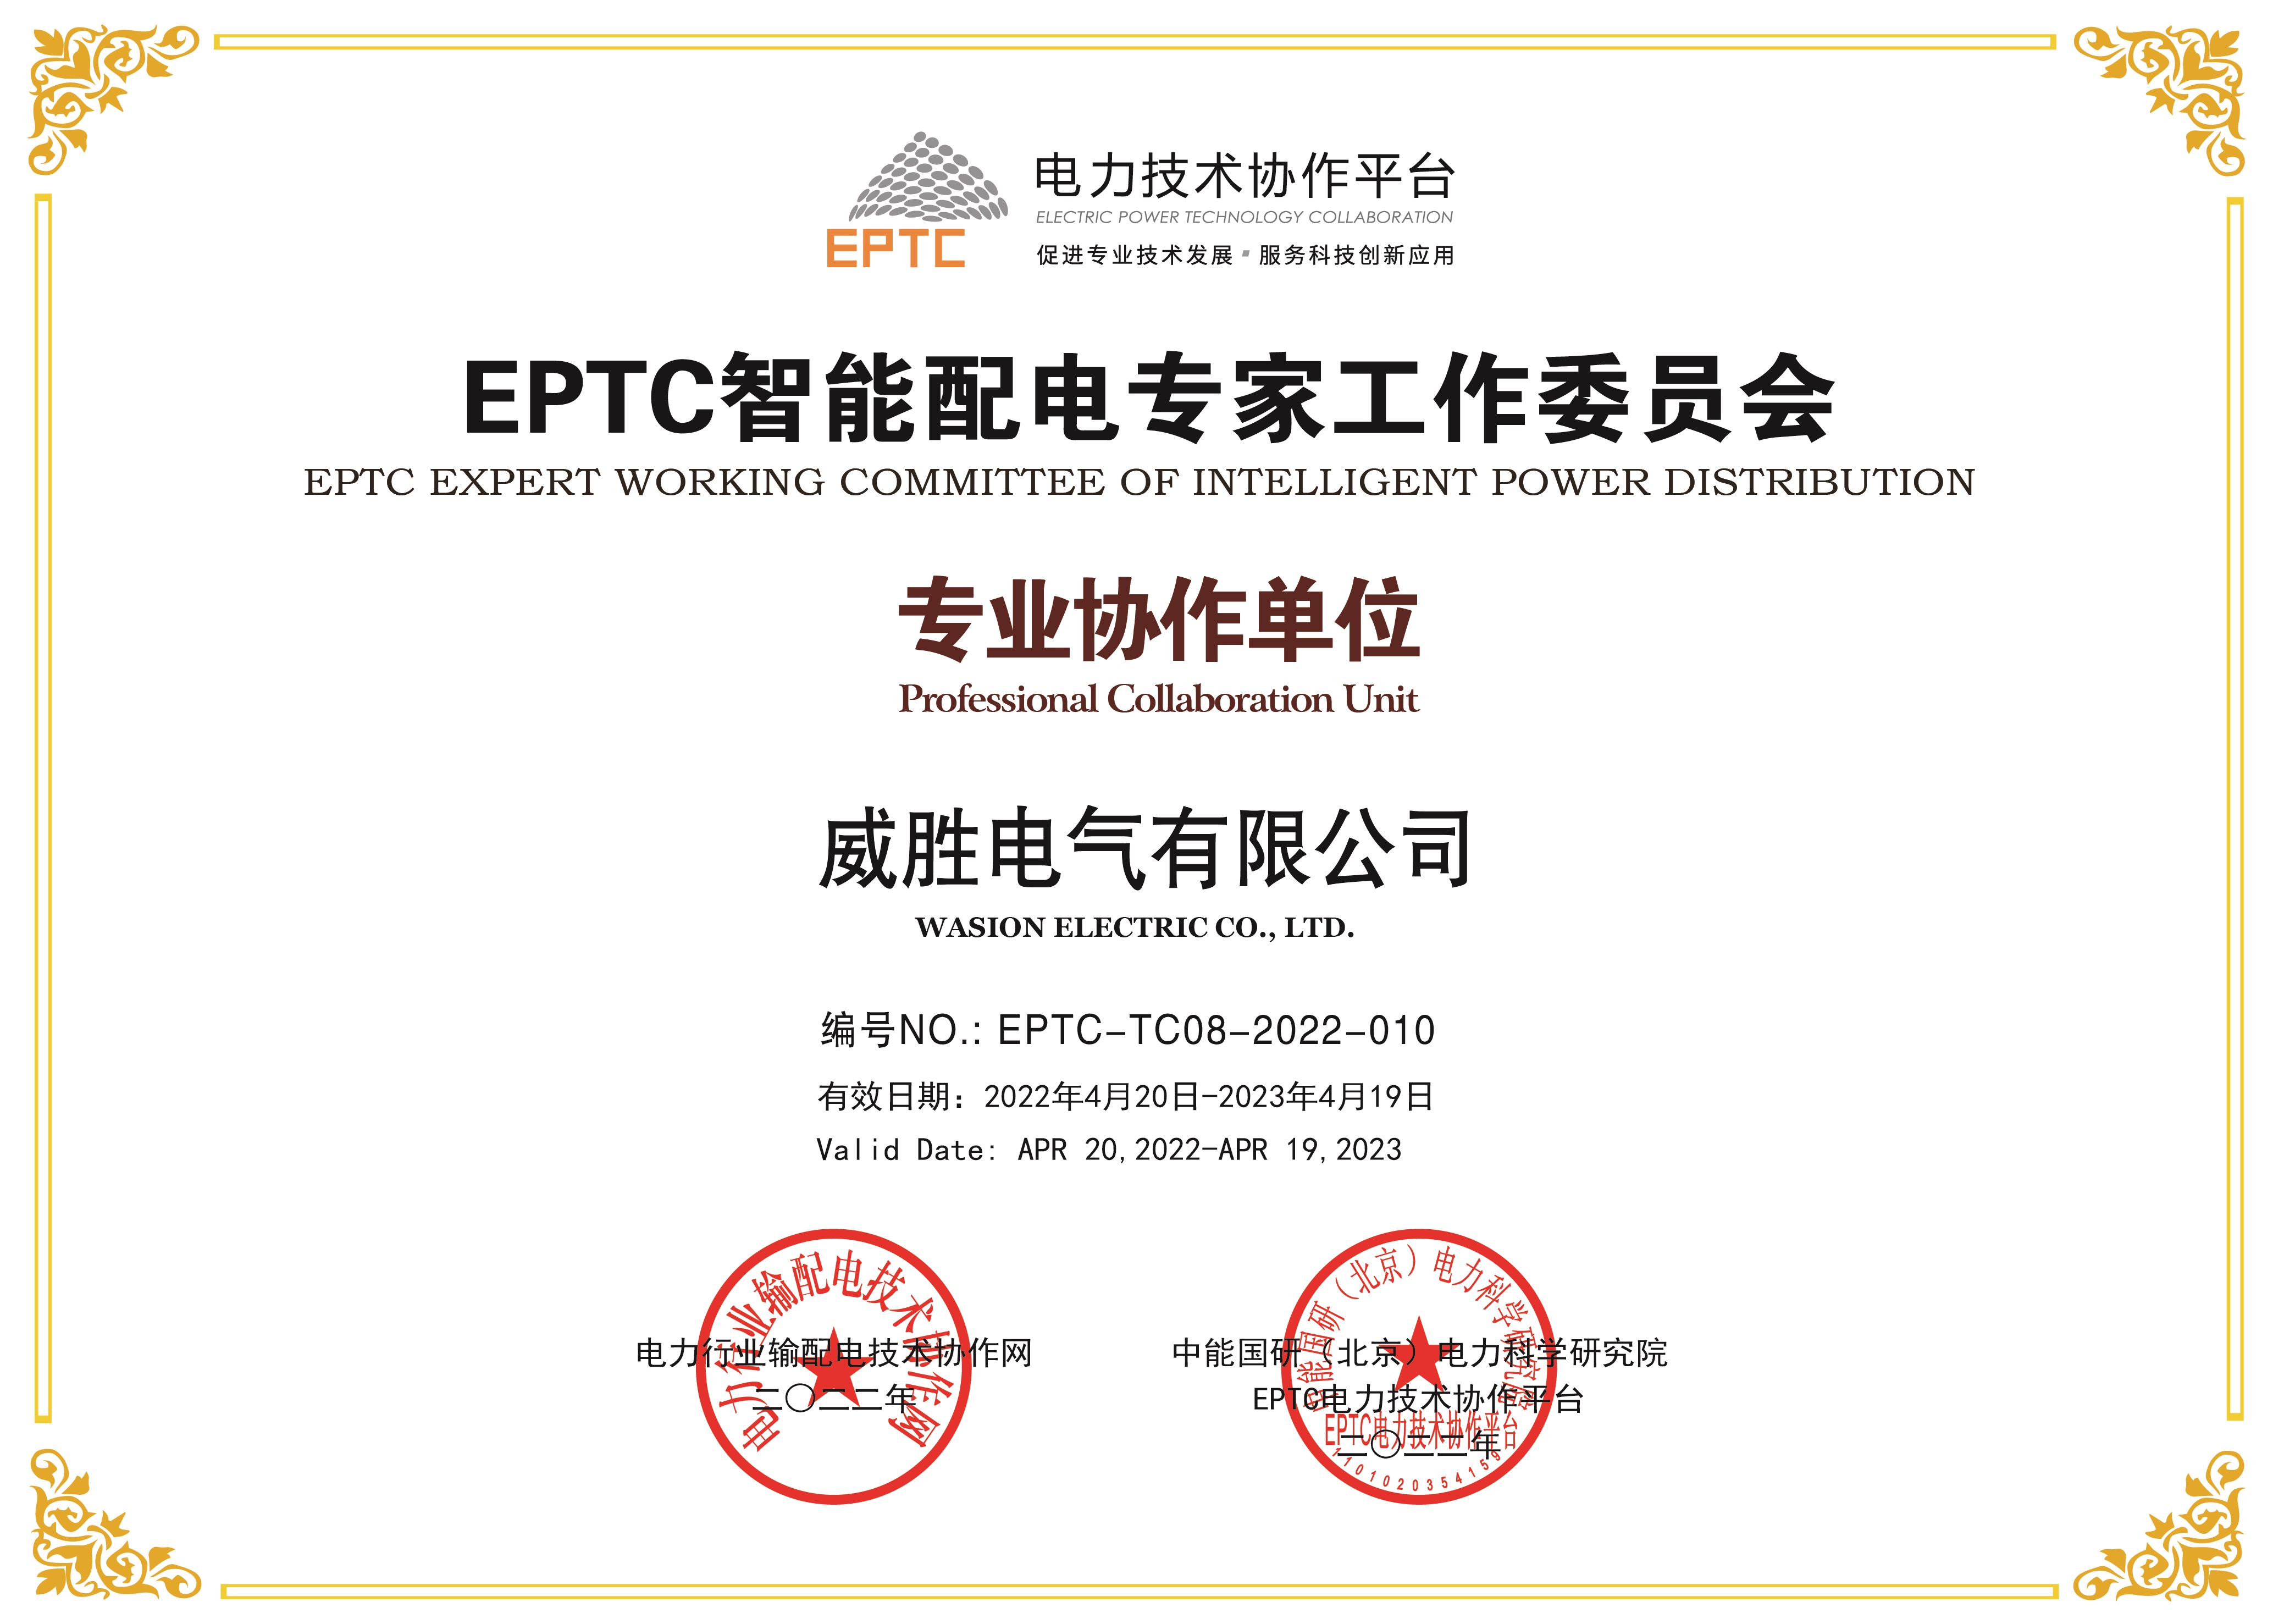 EPTC智能配电专家工作委员会专业协作单位